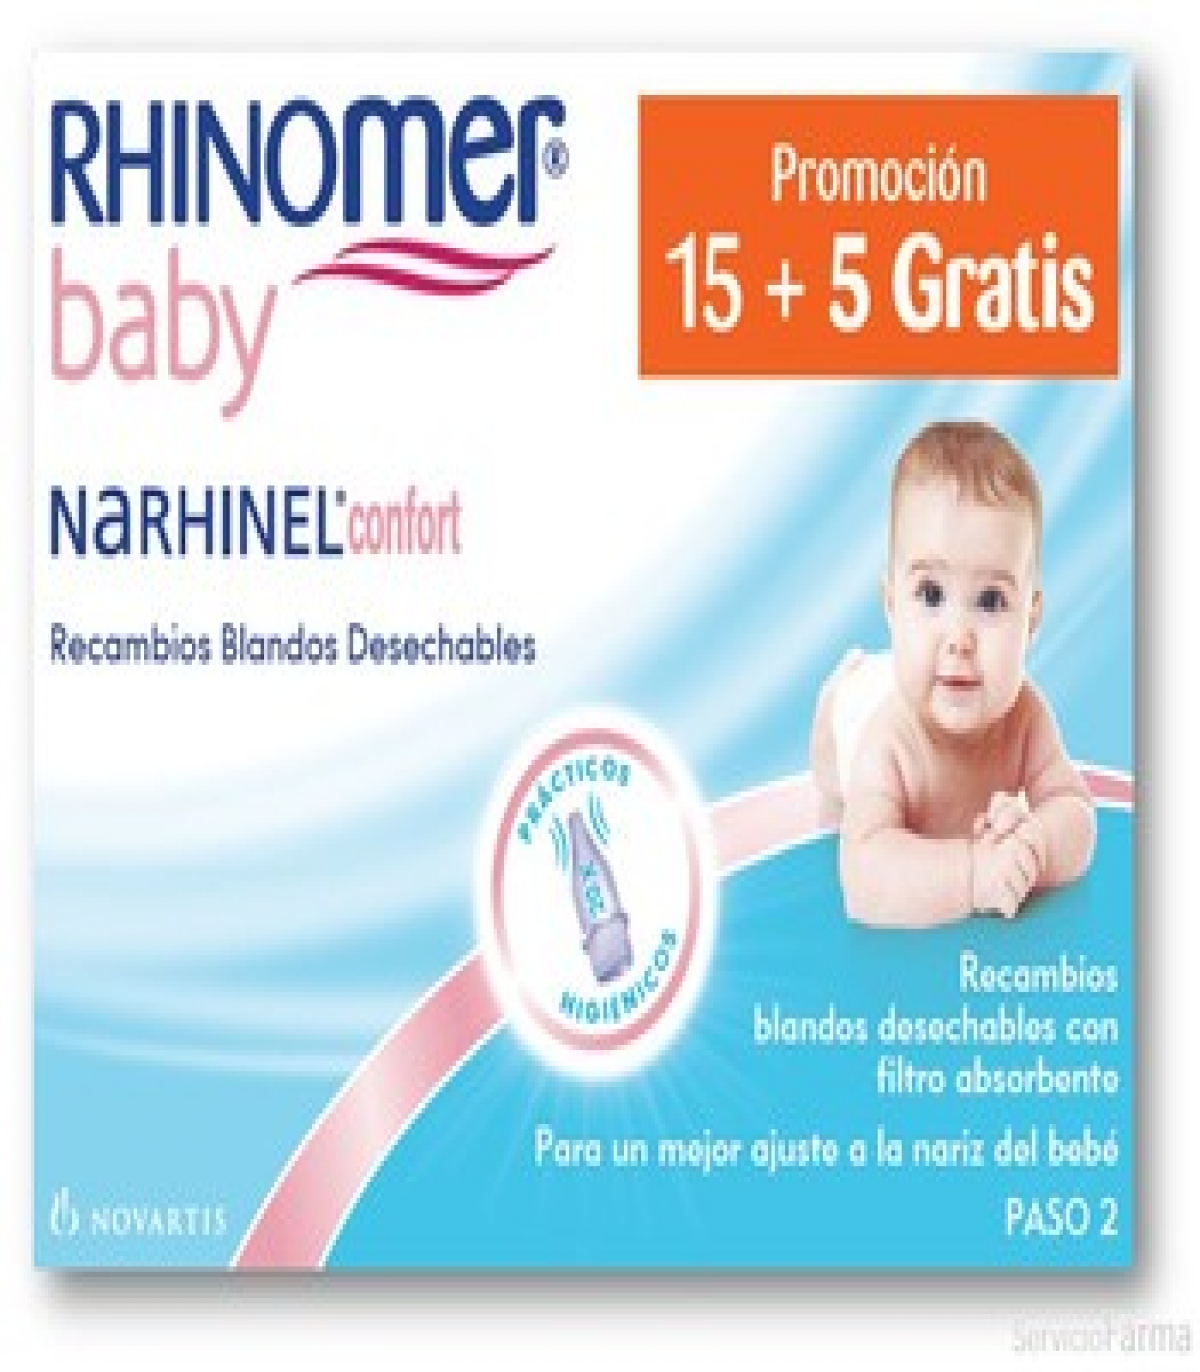 Rhinomer Baby Narhinel Confort 20 Recambios Blandos Desechables